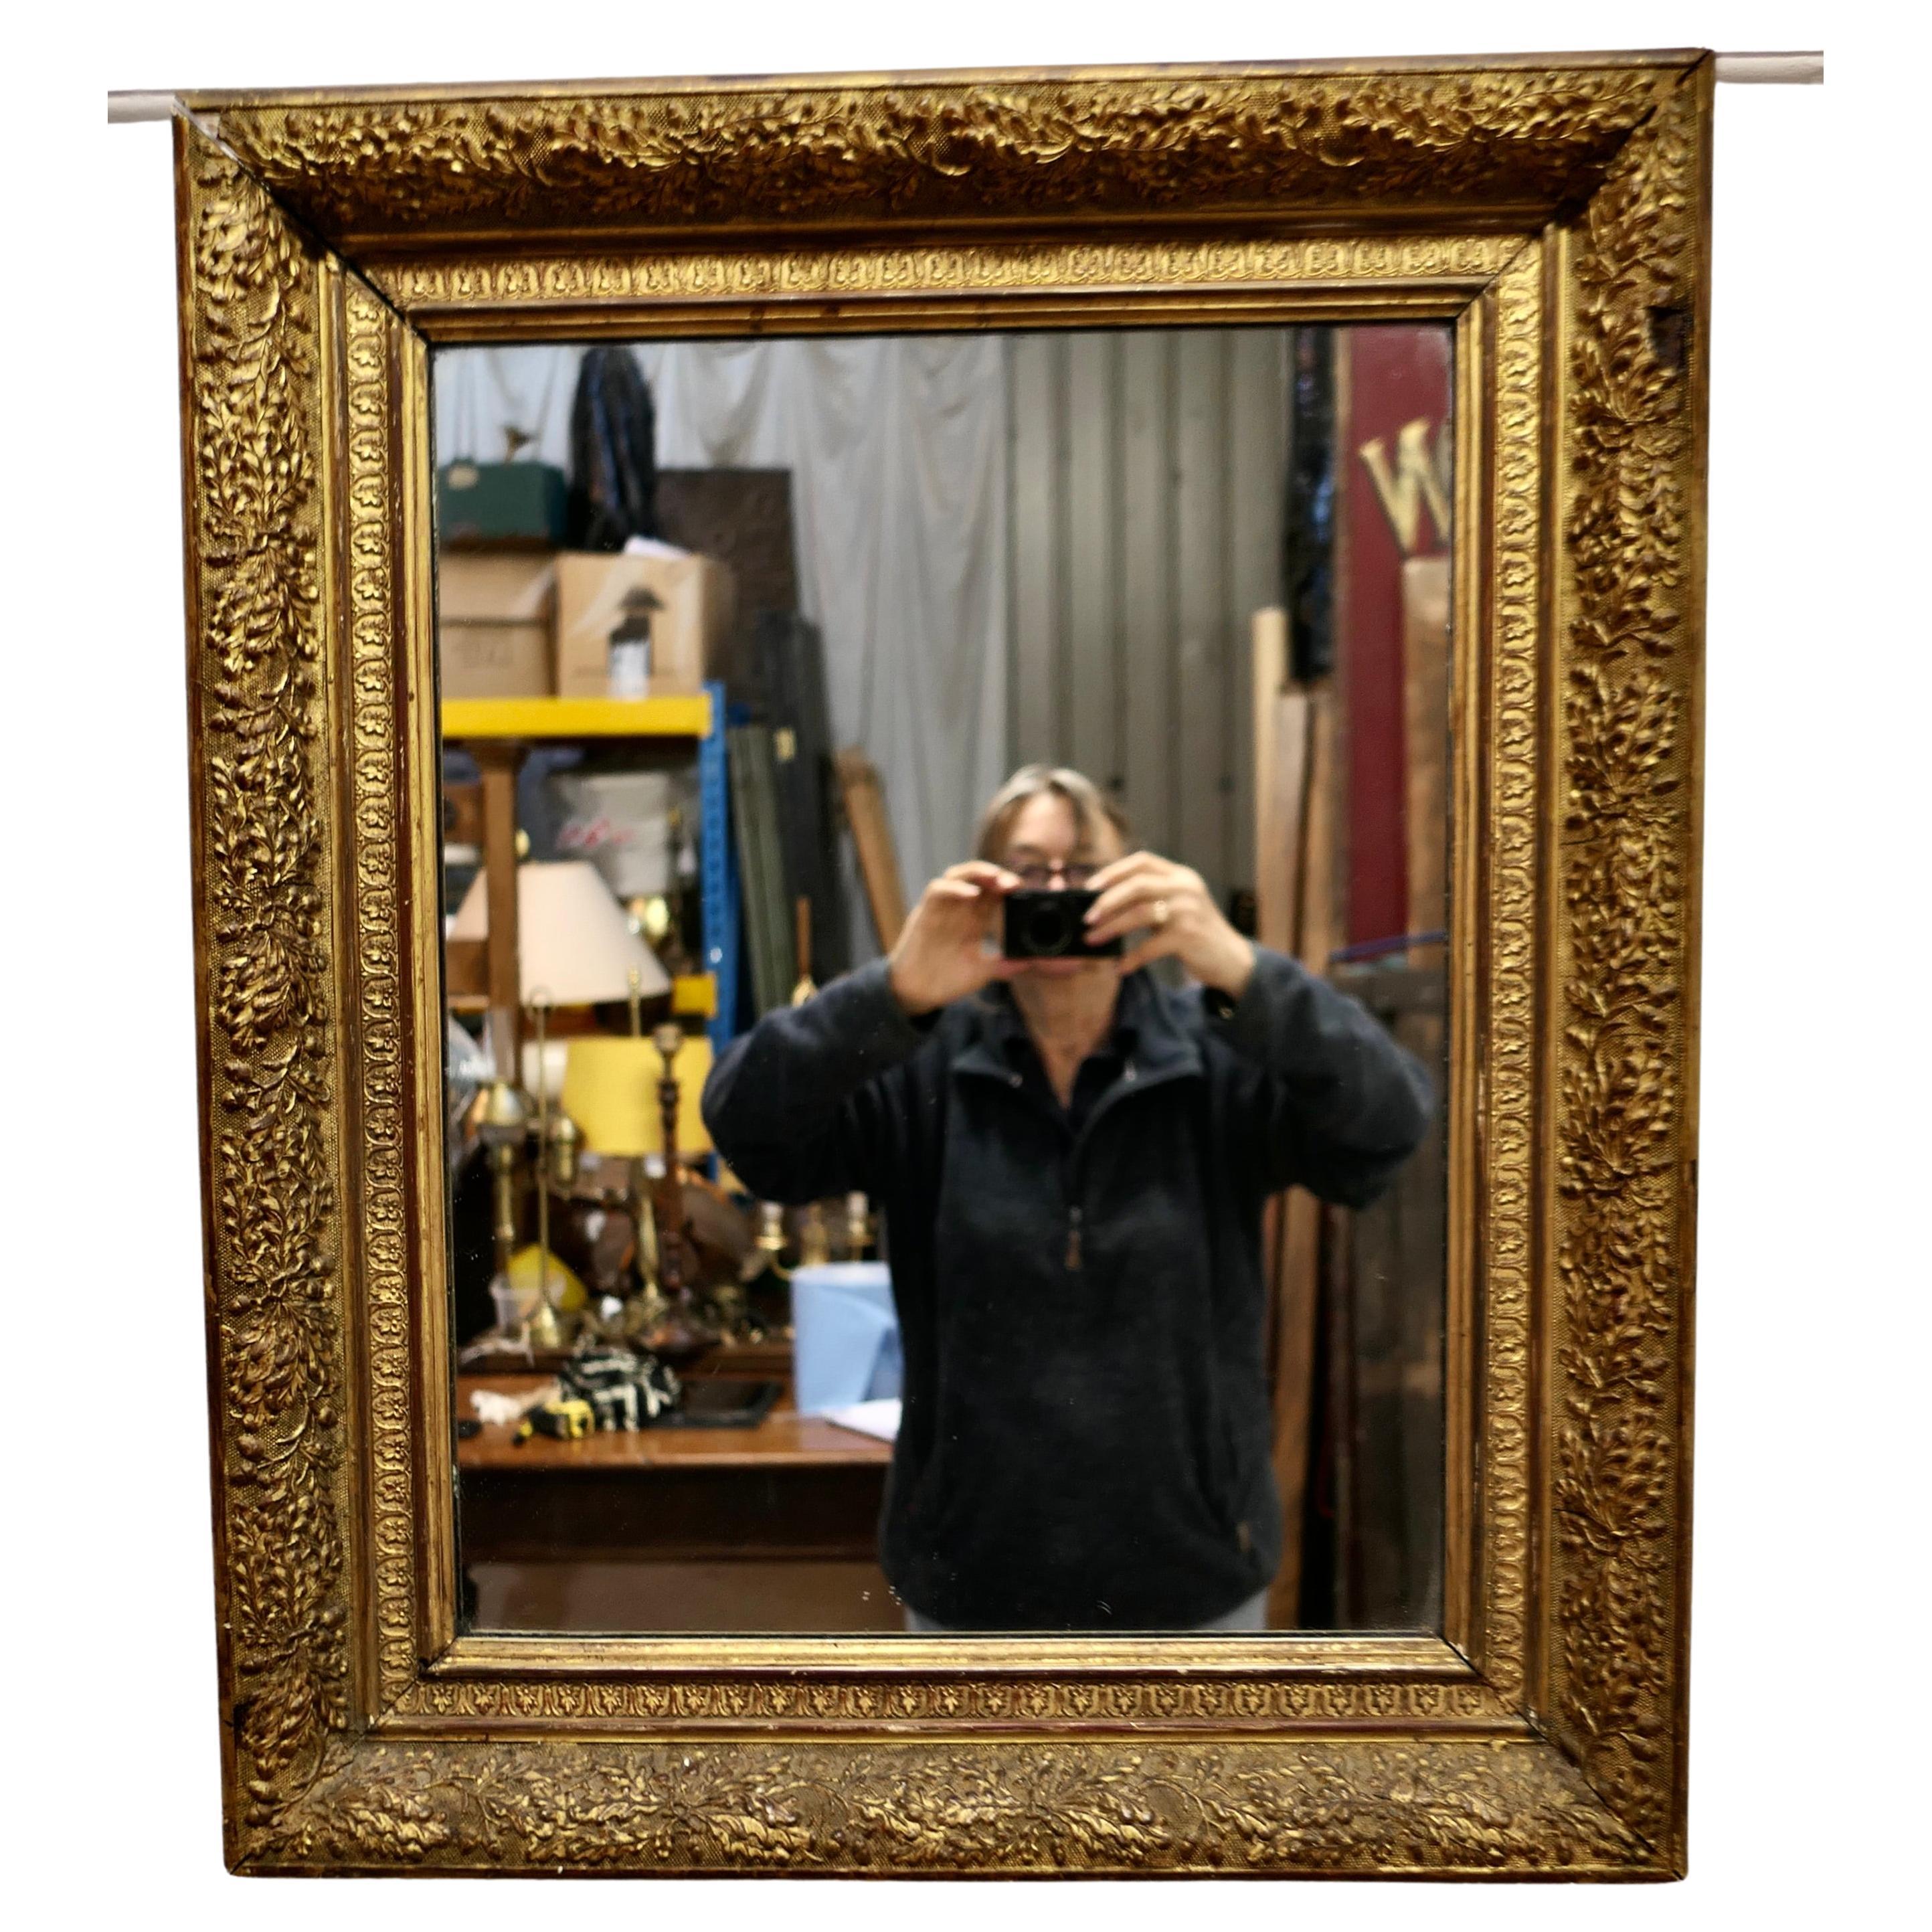 Elegance d'un miroir mural doré du 19e siècle

Il s'agit d'un très beau miroir ancien, placé dans un cadre doré décoratif profondément moulé de 4 pouces de large, 
Le miroir est en bon état, le cadre est très attrayant avec des moulures profondes.